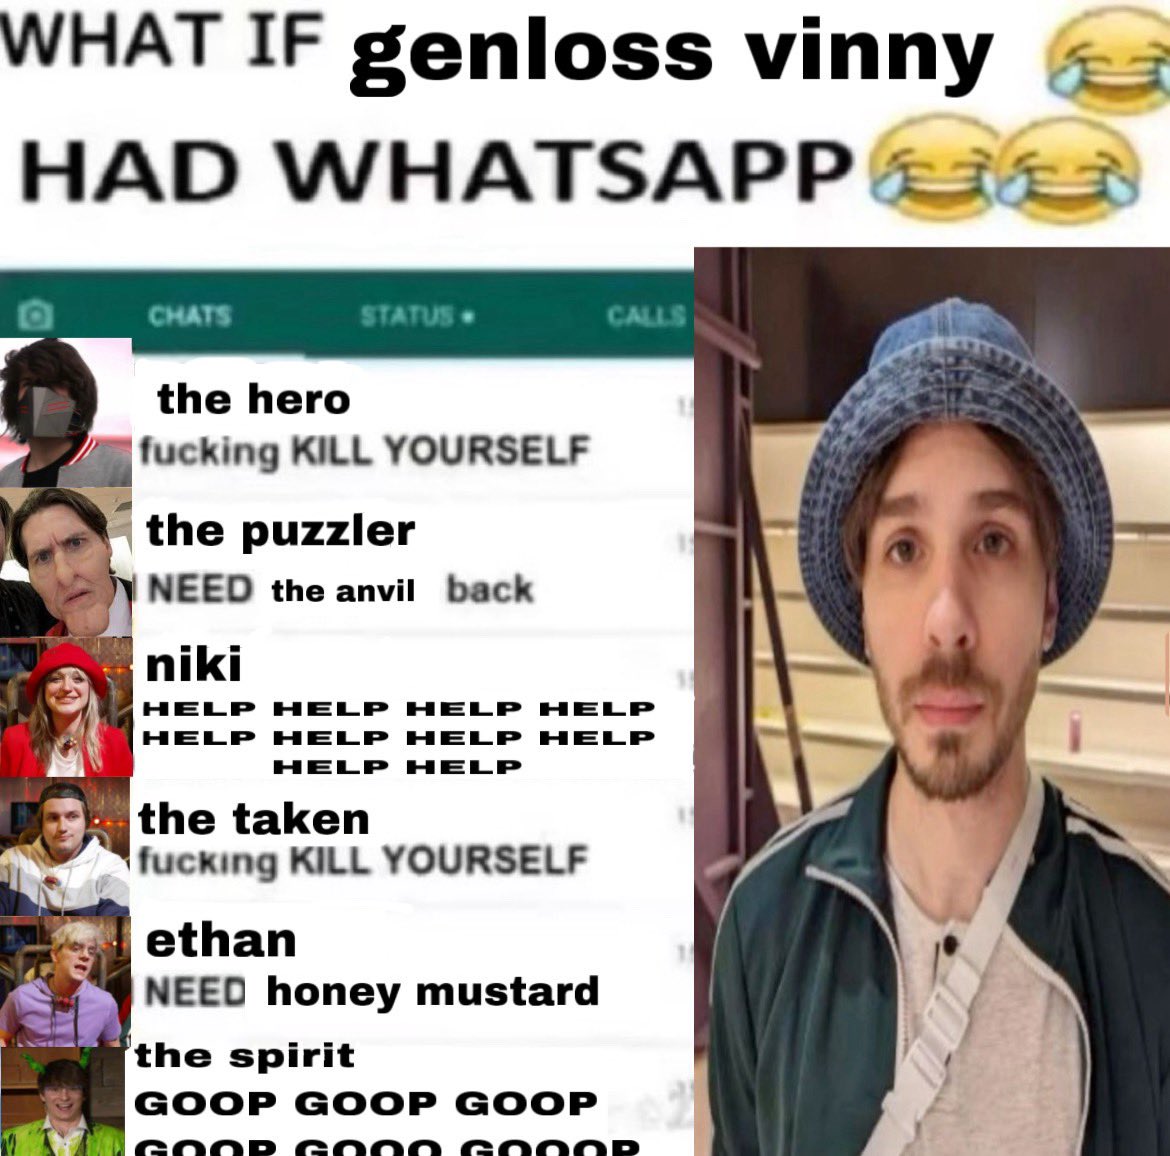 what if genloss vinny 😂 had whatsapp 😂😂